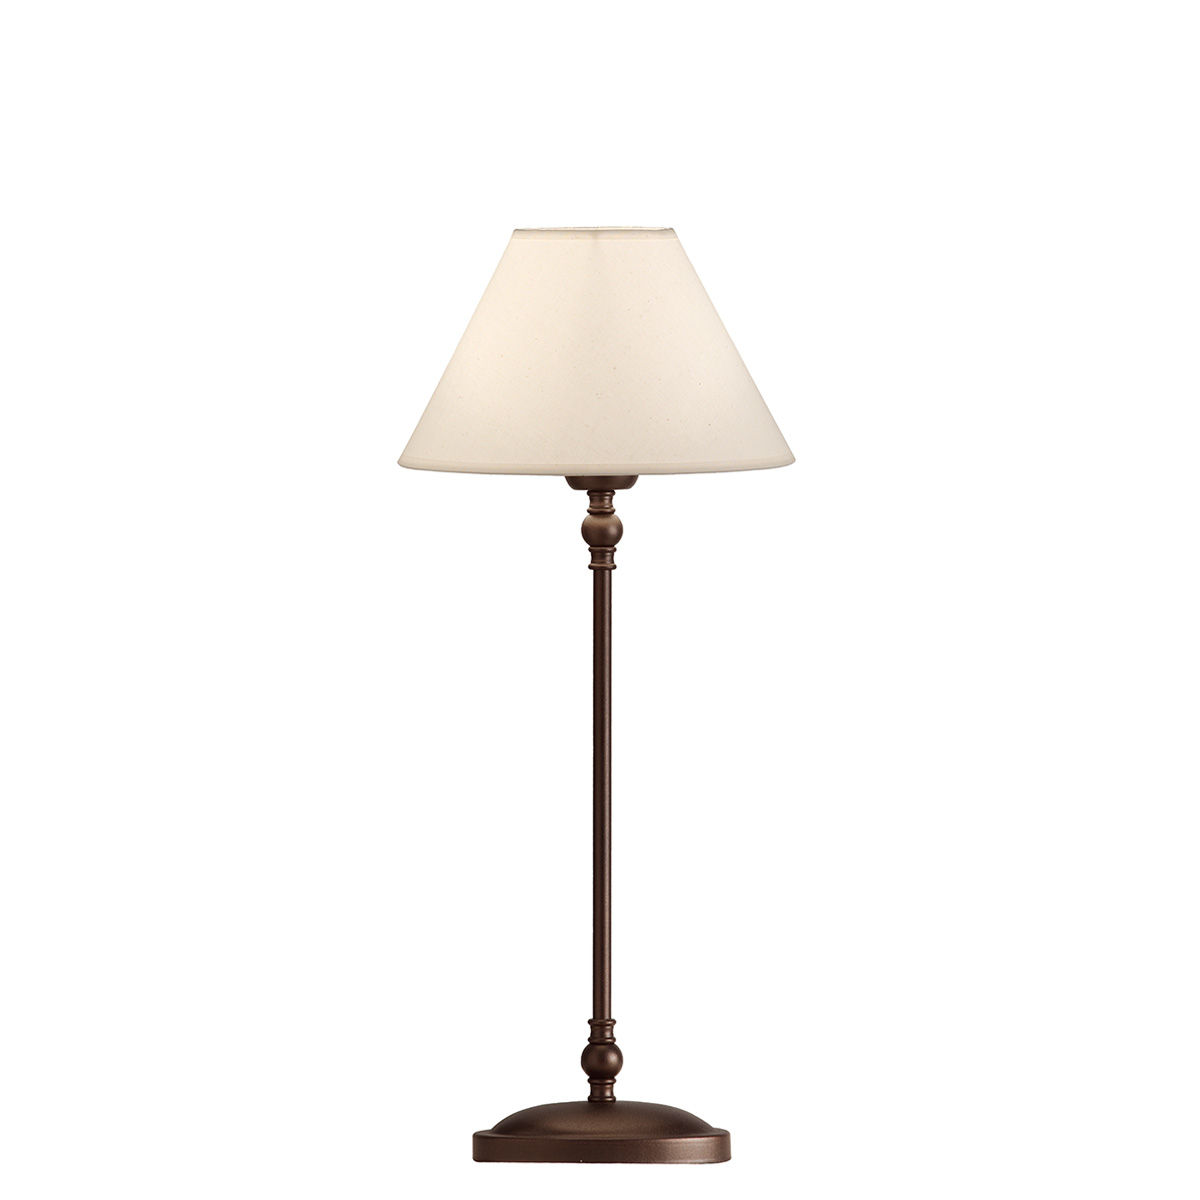 Ρουστίκ επιτραπέζιο φωτιστικό με καπέλο BIANCO-2 rustic table lamp with shade